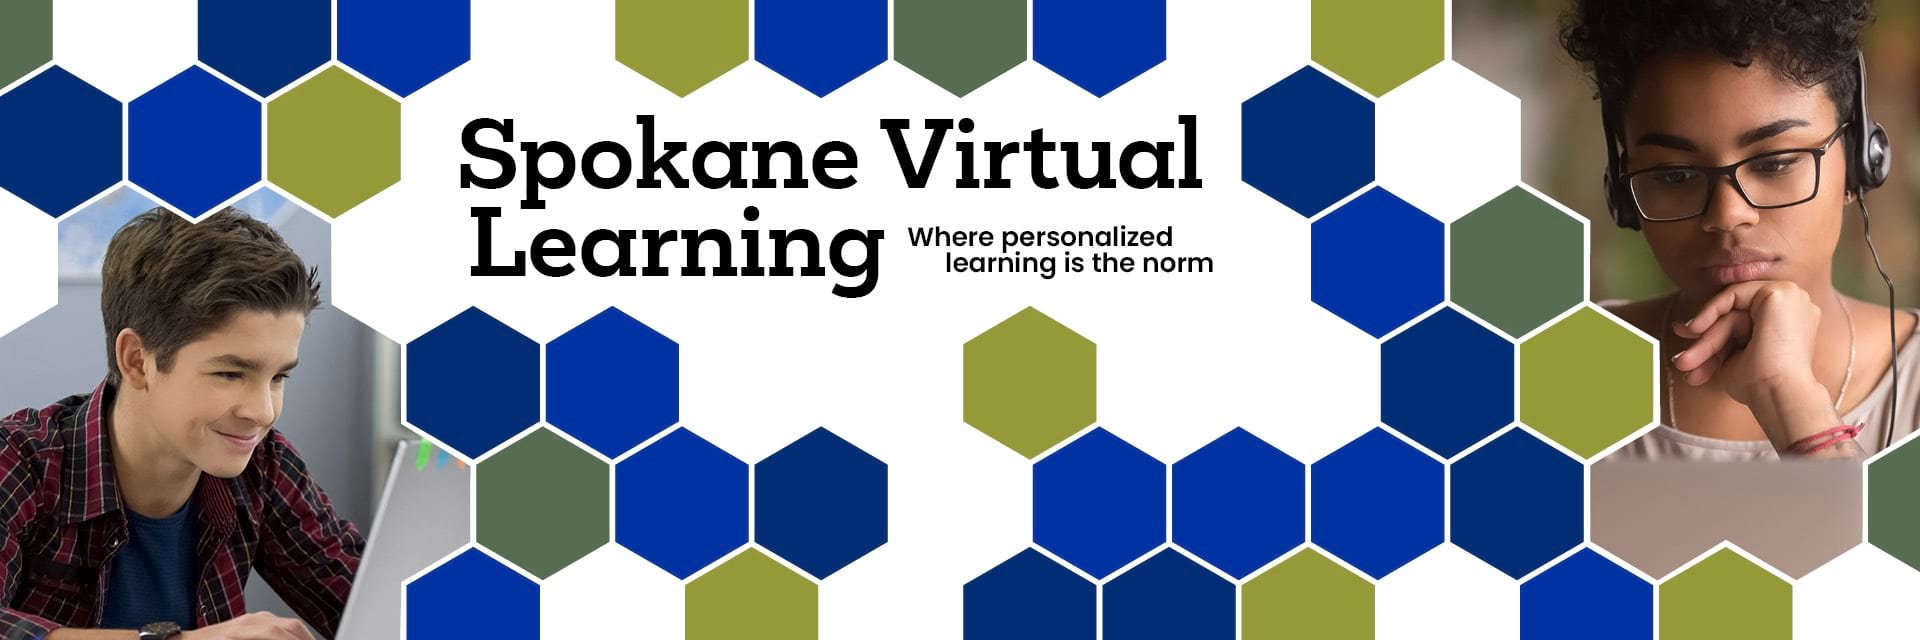 Spokane virtual graphic